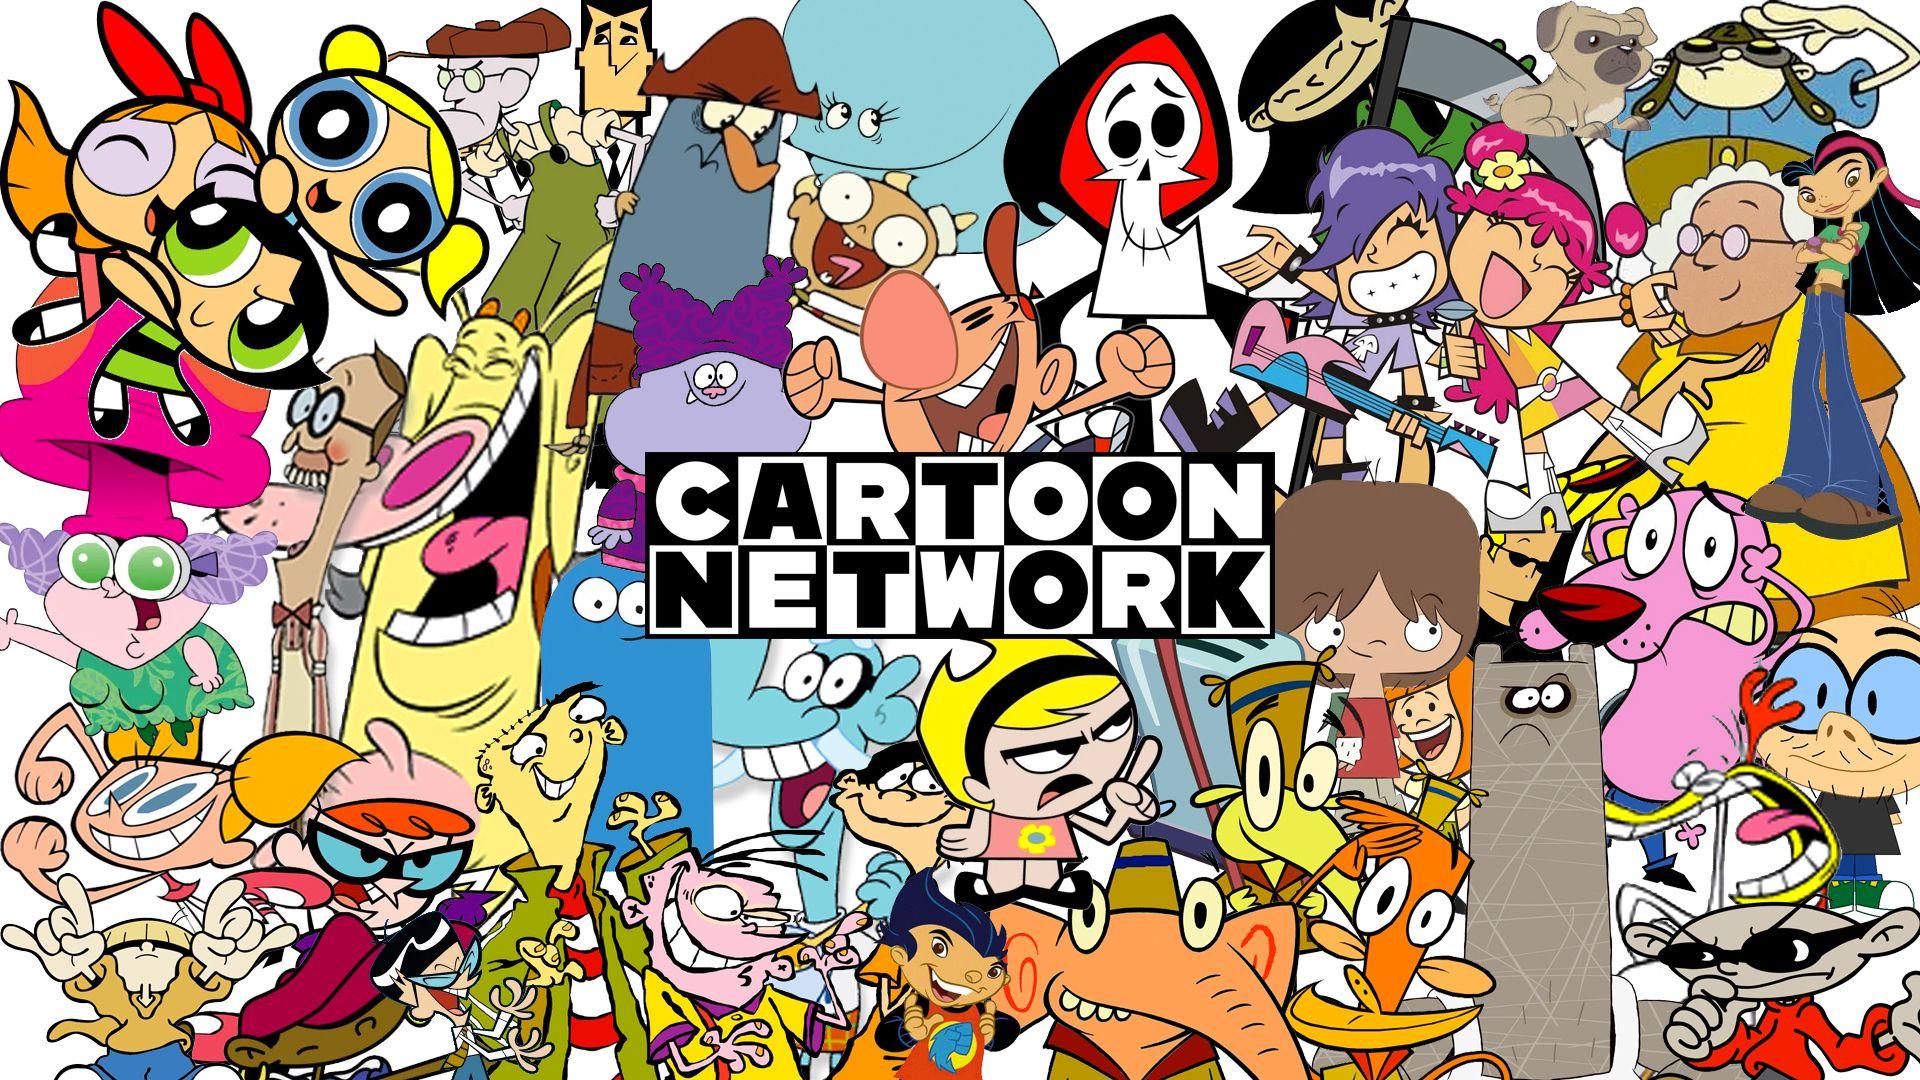 Cartoon Network Fondos de pantalla Cartoon Network Fondos de pantallas  Cartoon Fondos de pantallas Imágenes por Joy9  Imágenes españoles imágenes